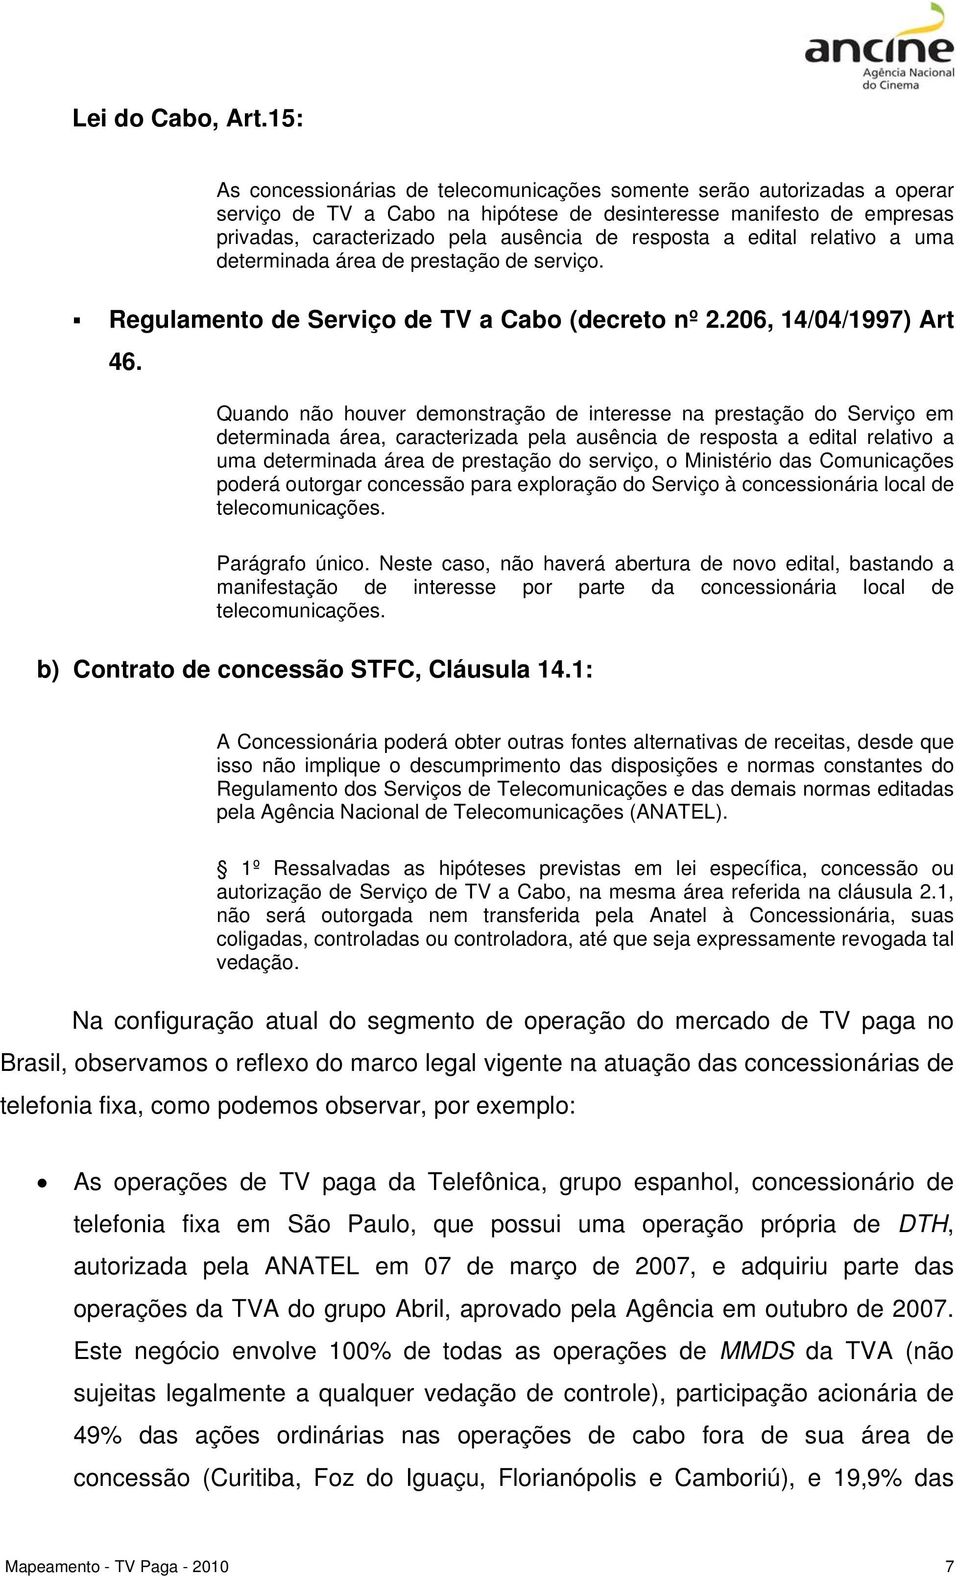 a edital relativo a uma determinada área de prestação de serviço. Regulamento de Serviço de TV a Cabo (decreto nº 2.206, 14/04/1997) Art 46.